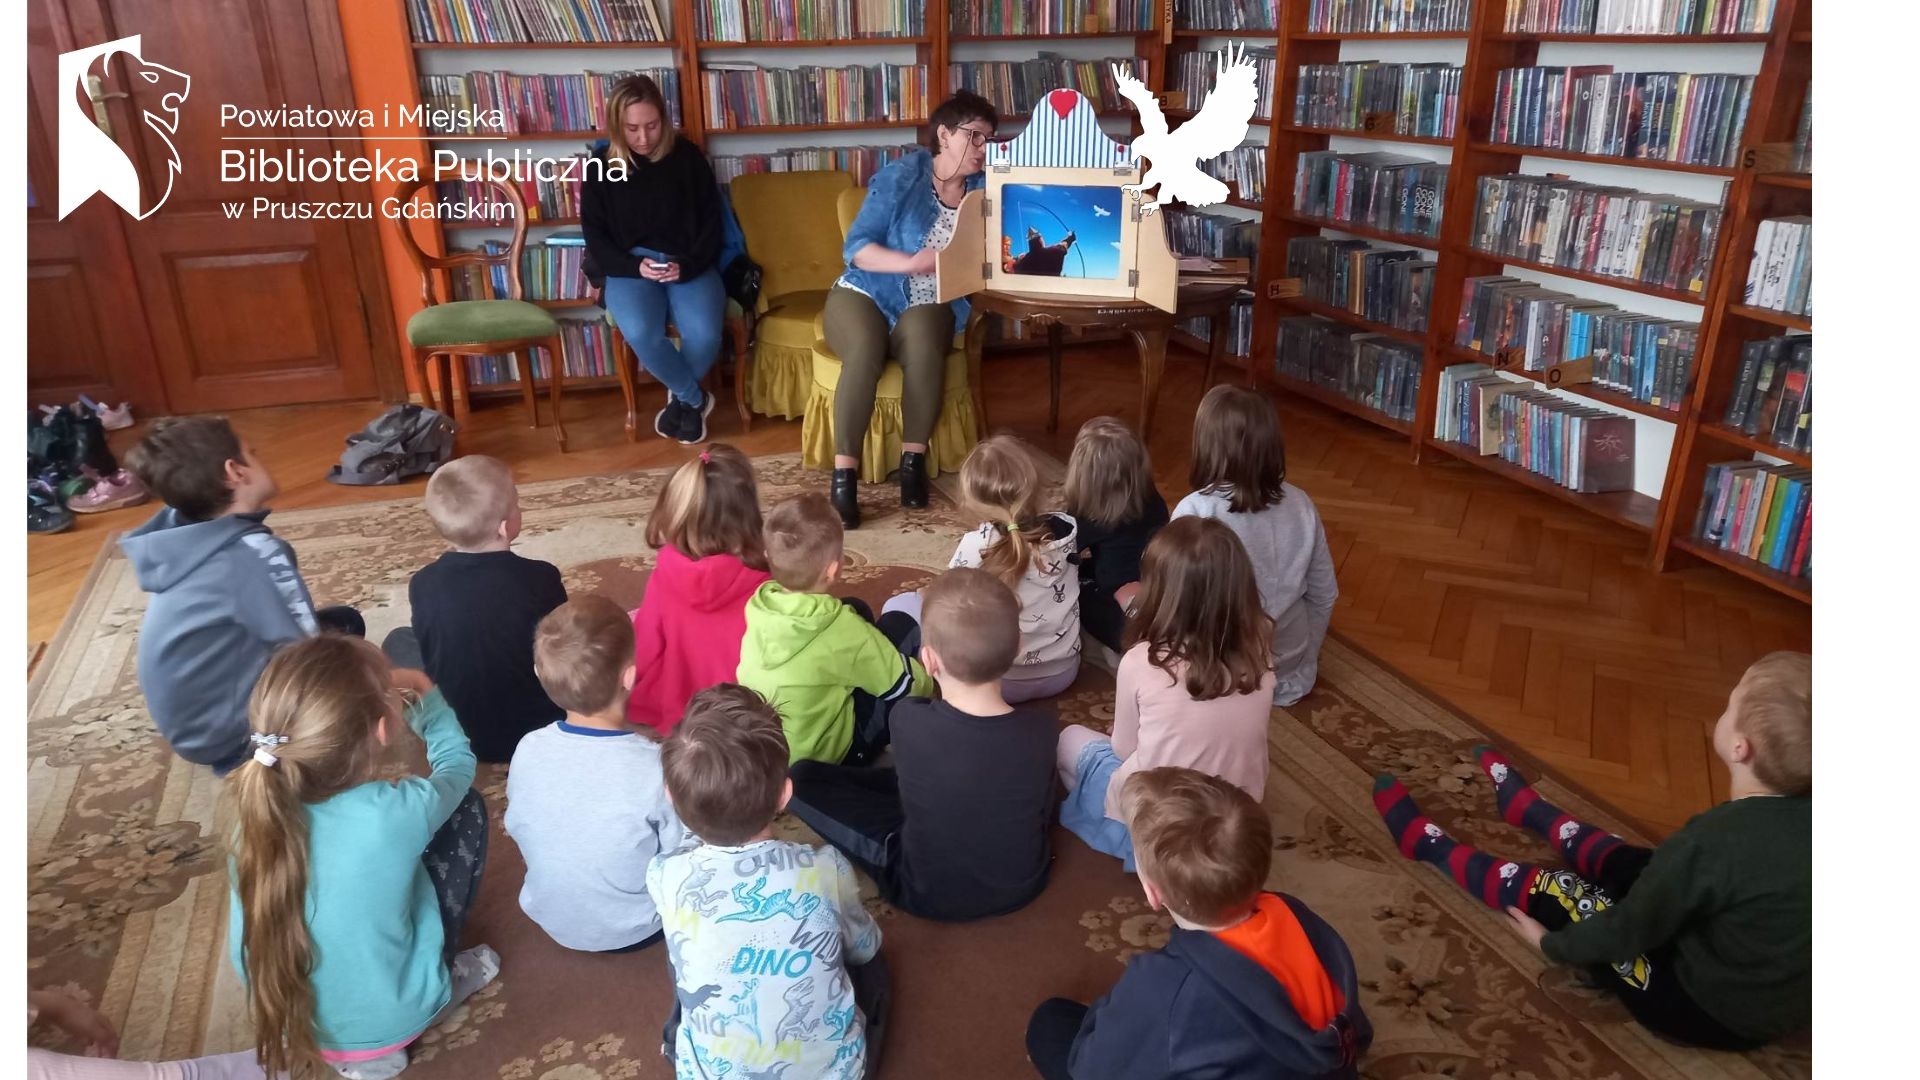 Grupa dzieci siedzi na dywanie i słucha Legendy o Lechu, Czechu i Rusie, która prezentuje im bibliotekarka przy pomocy teatrzyku kamishibai.